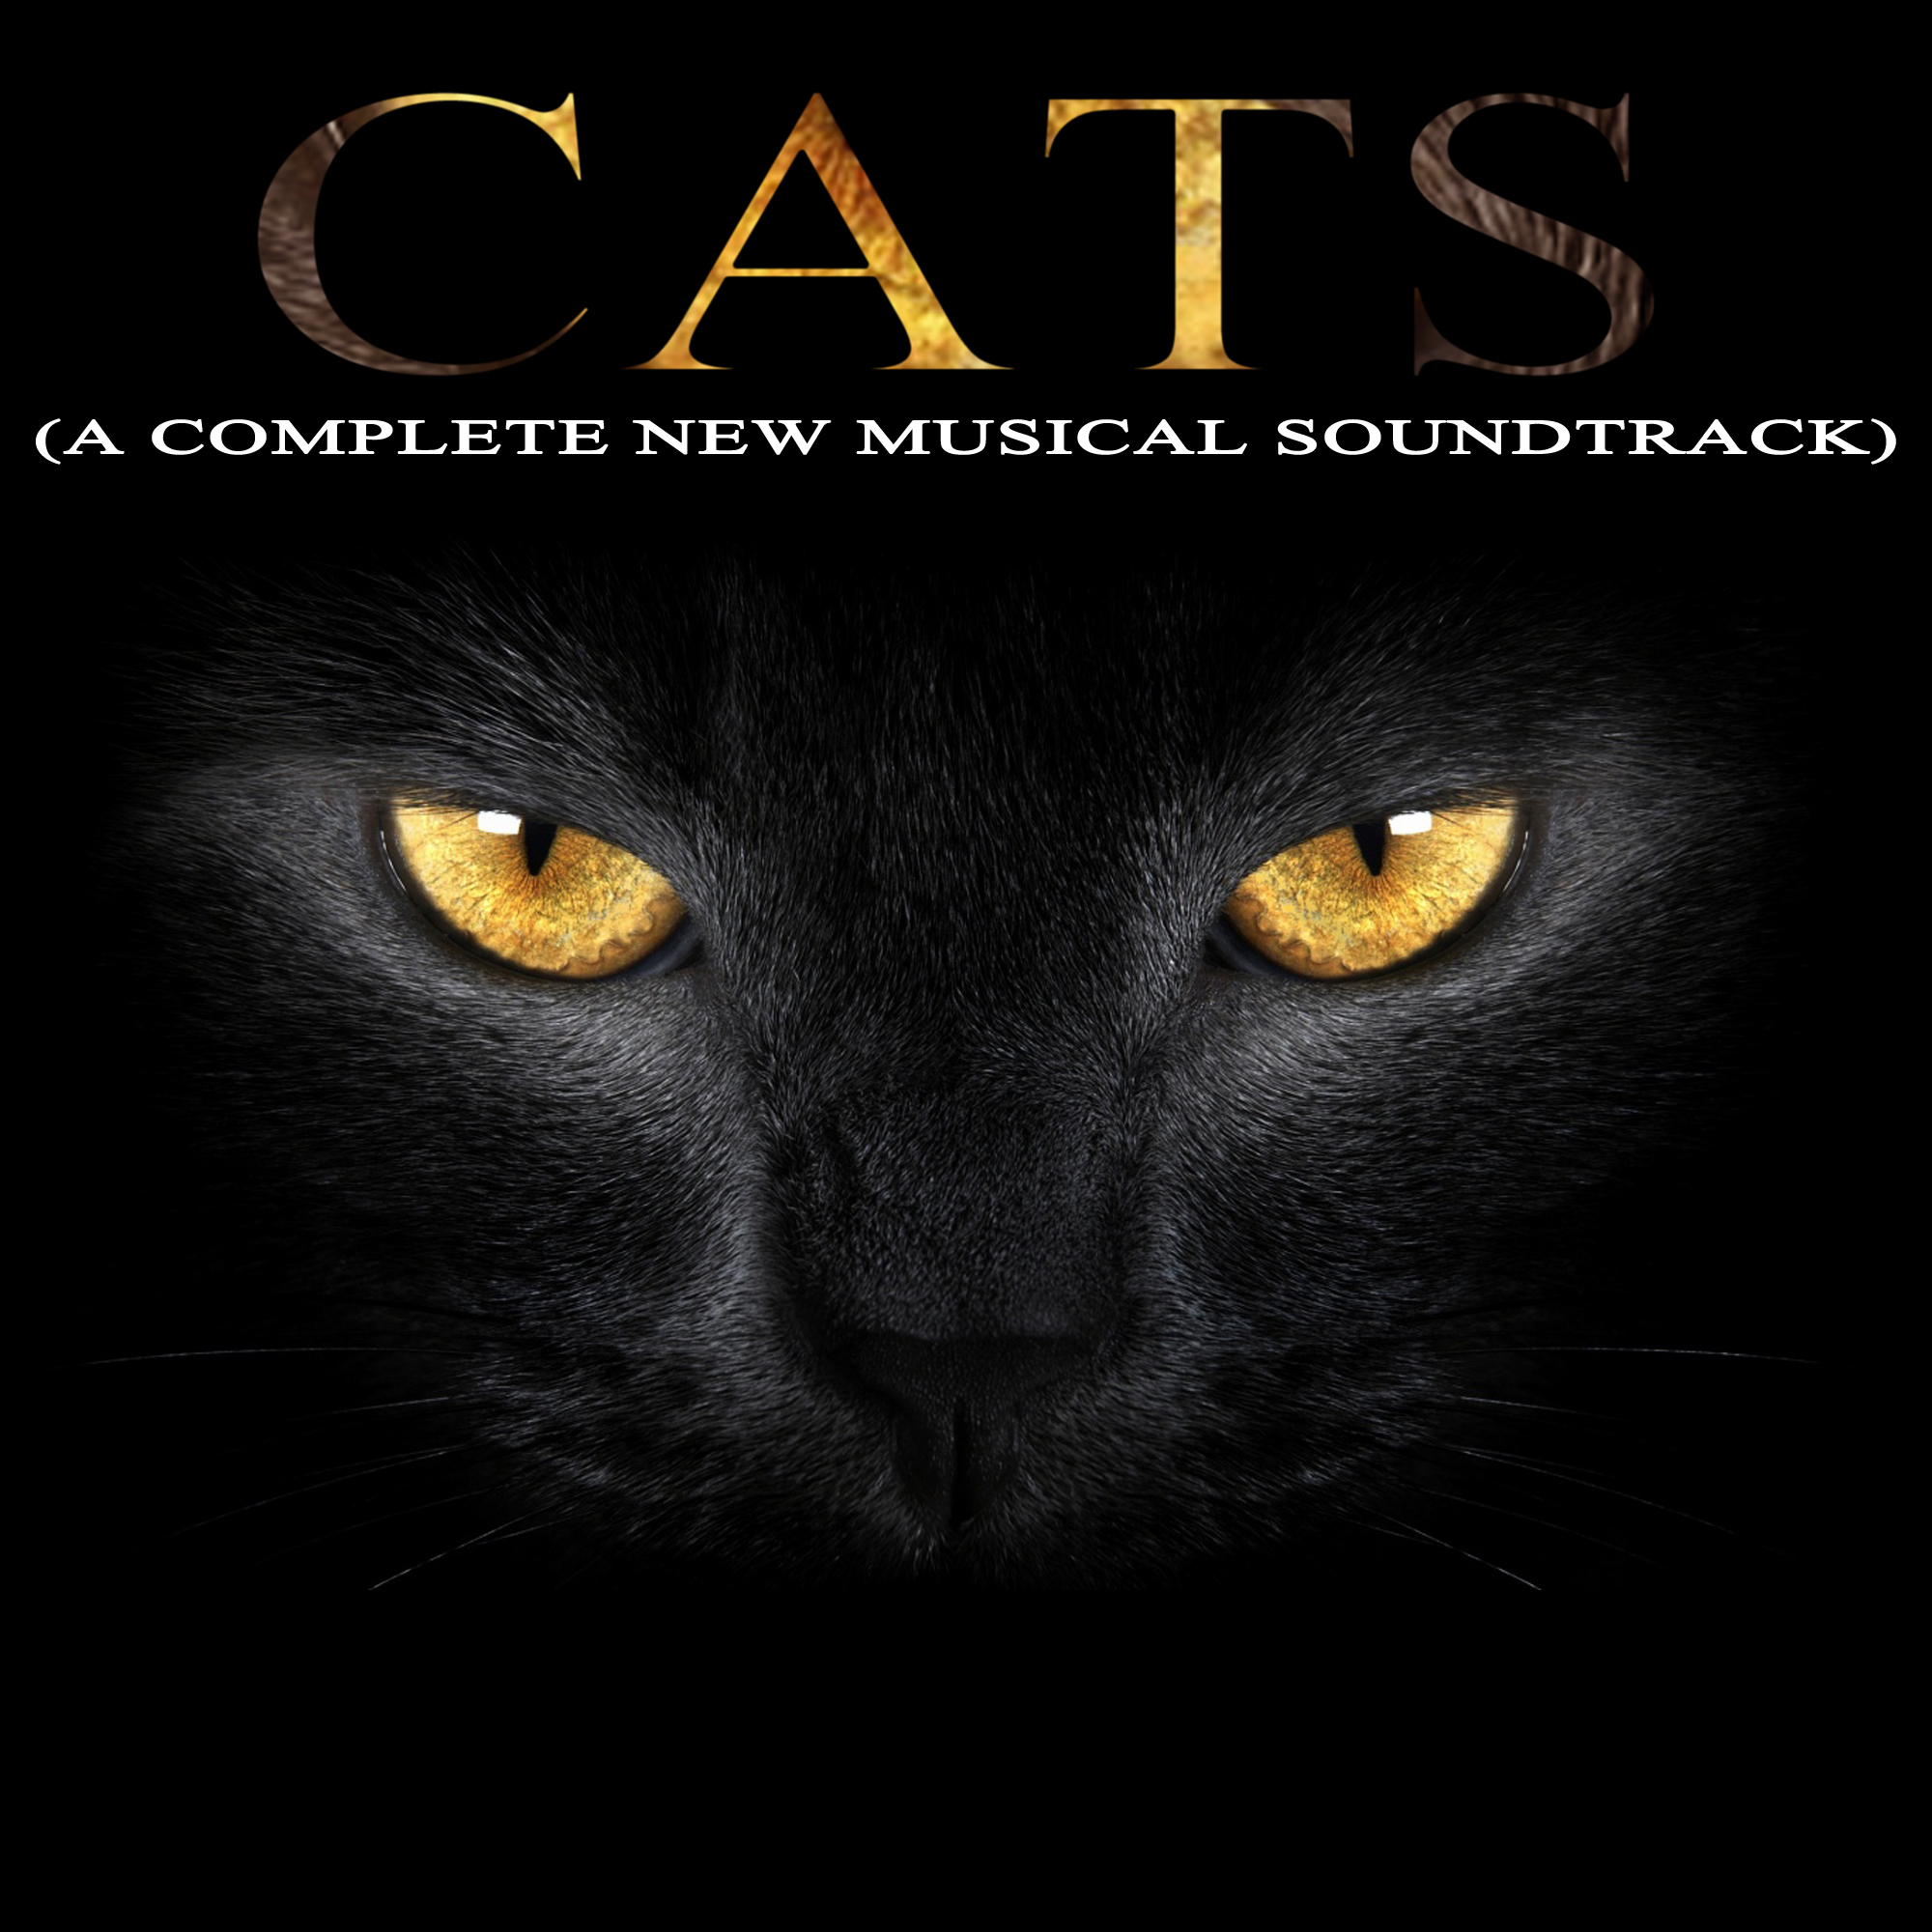 cats 1998 film soundtrack